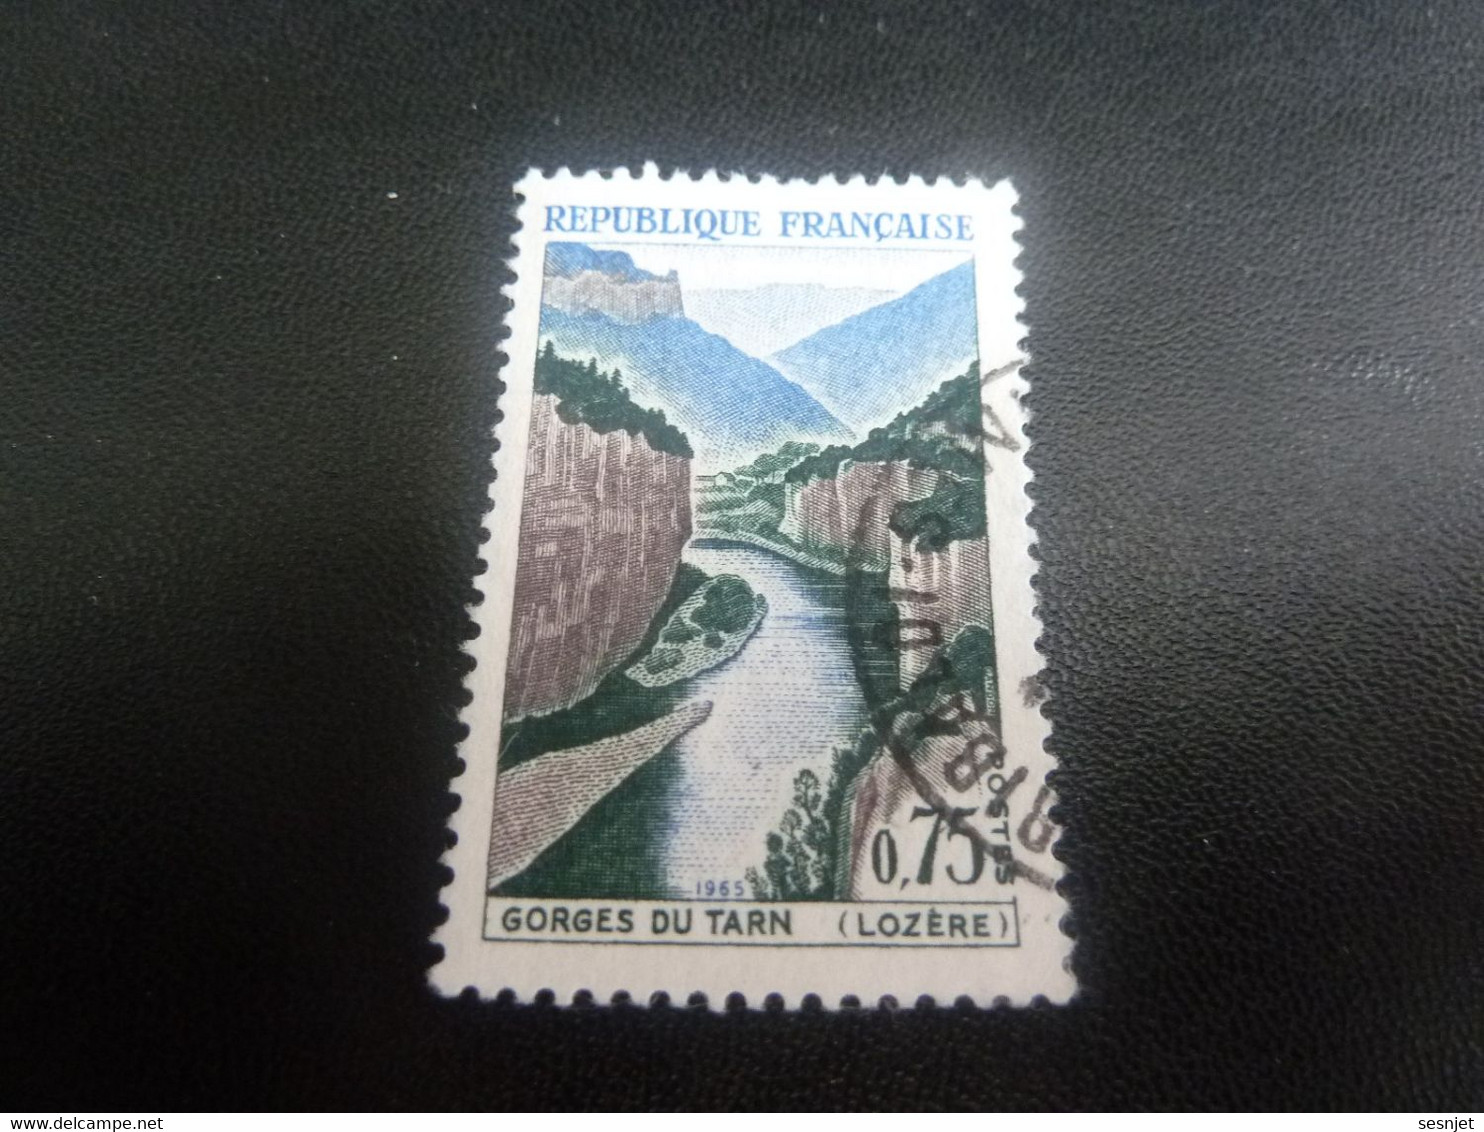 Gorges Du Tarn - Lozère - 75c. - Brun Violacé, Bleu Et Vert - Oblitéré - Année 1965 - - Oblitérés